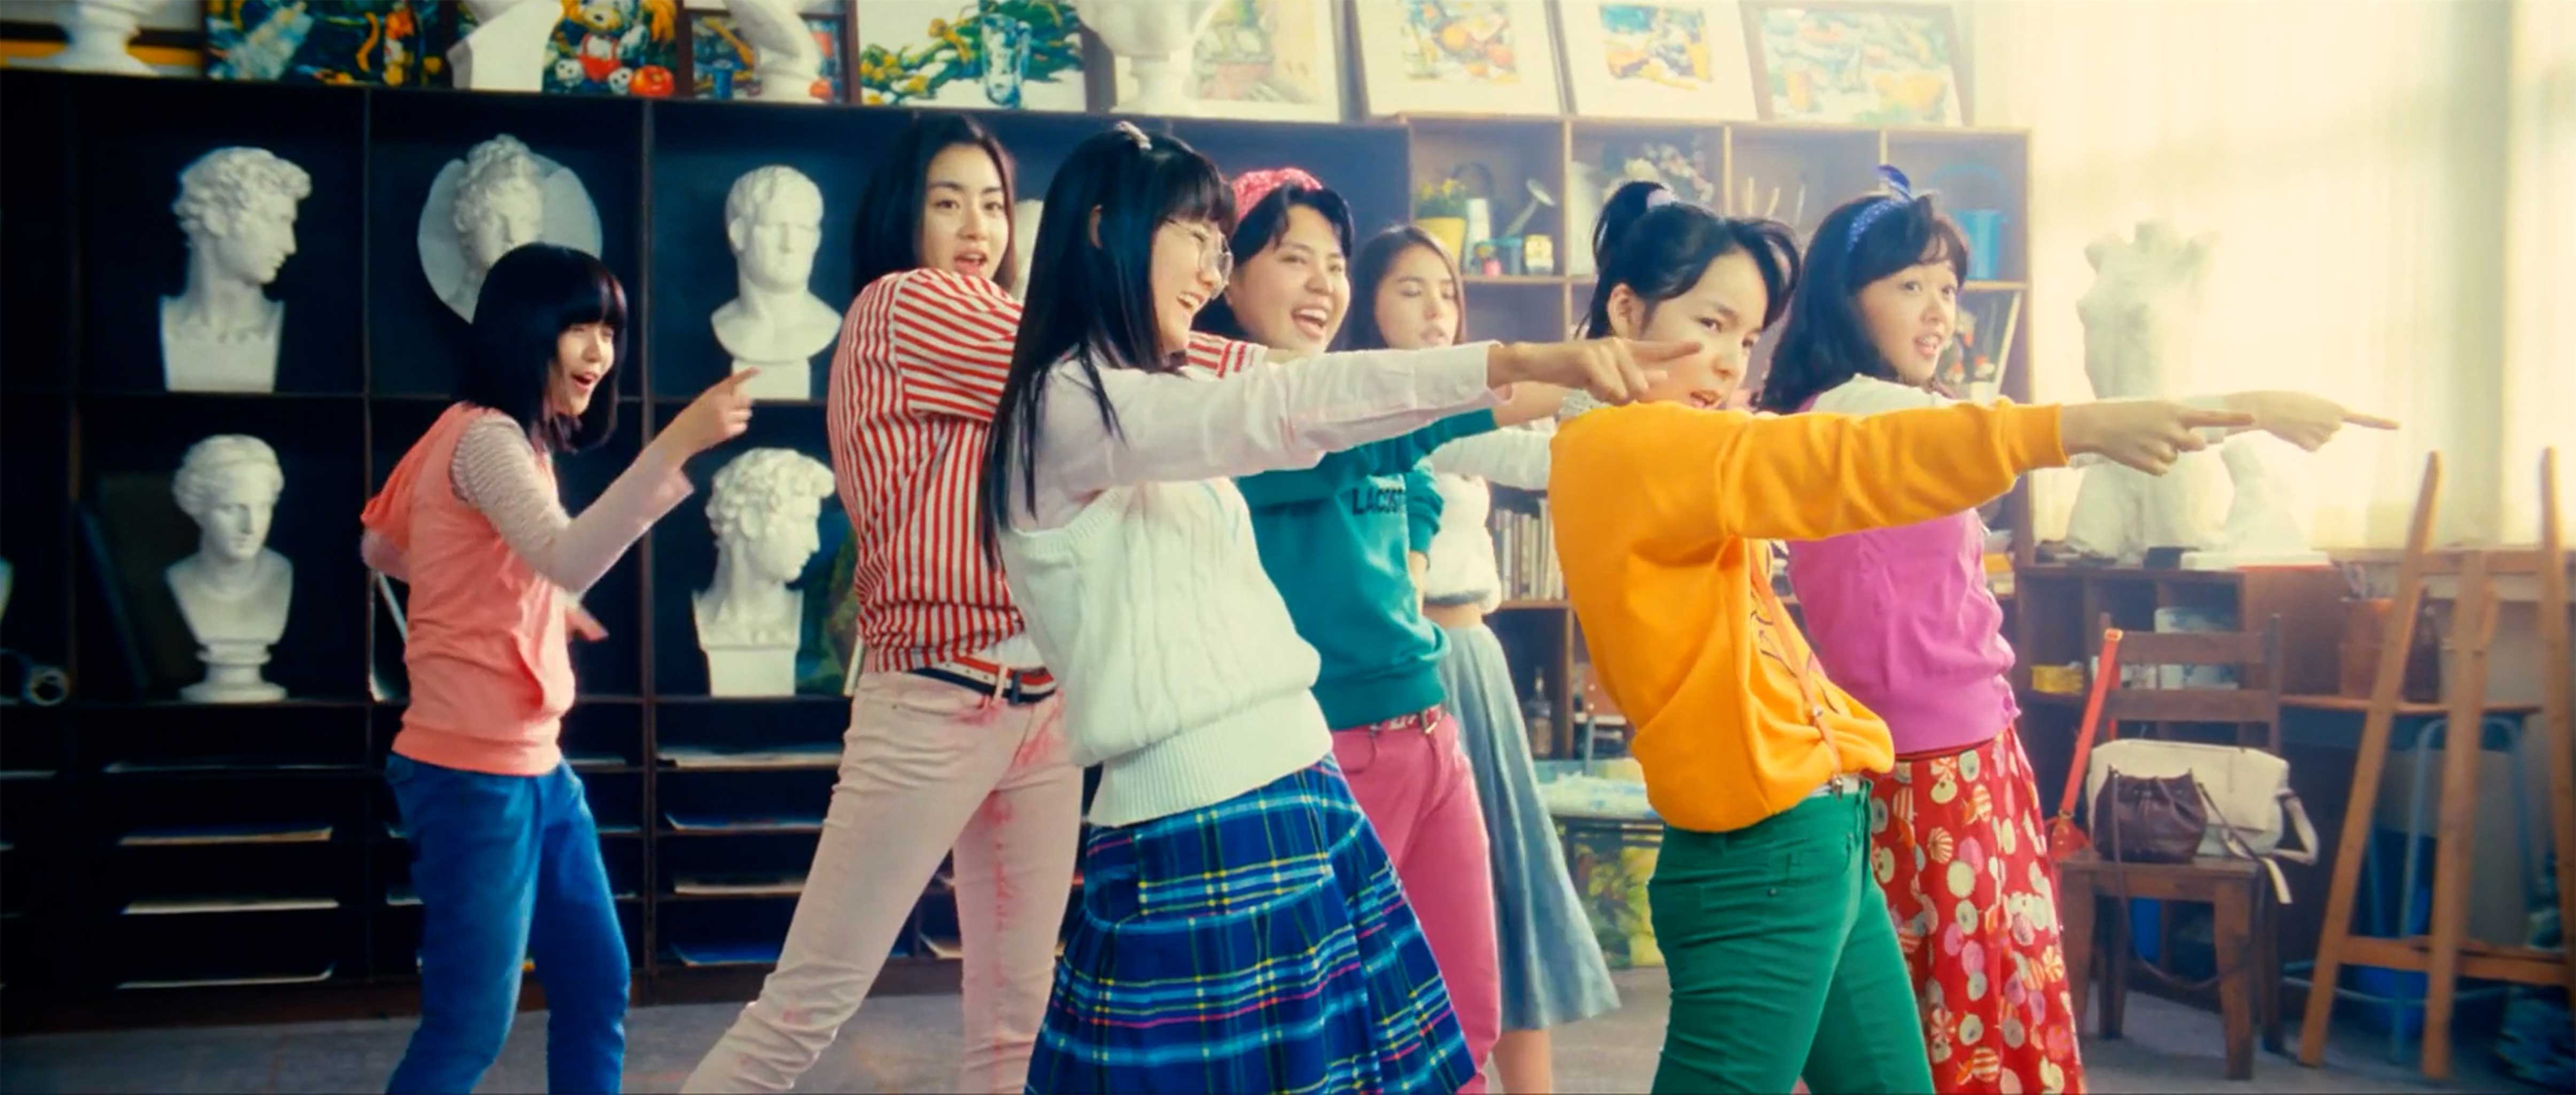 Korean GIrls Dance Together